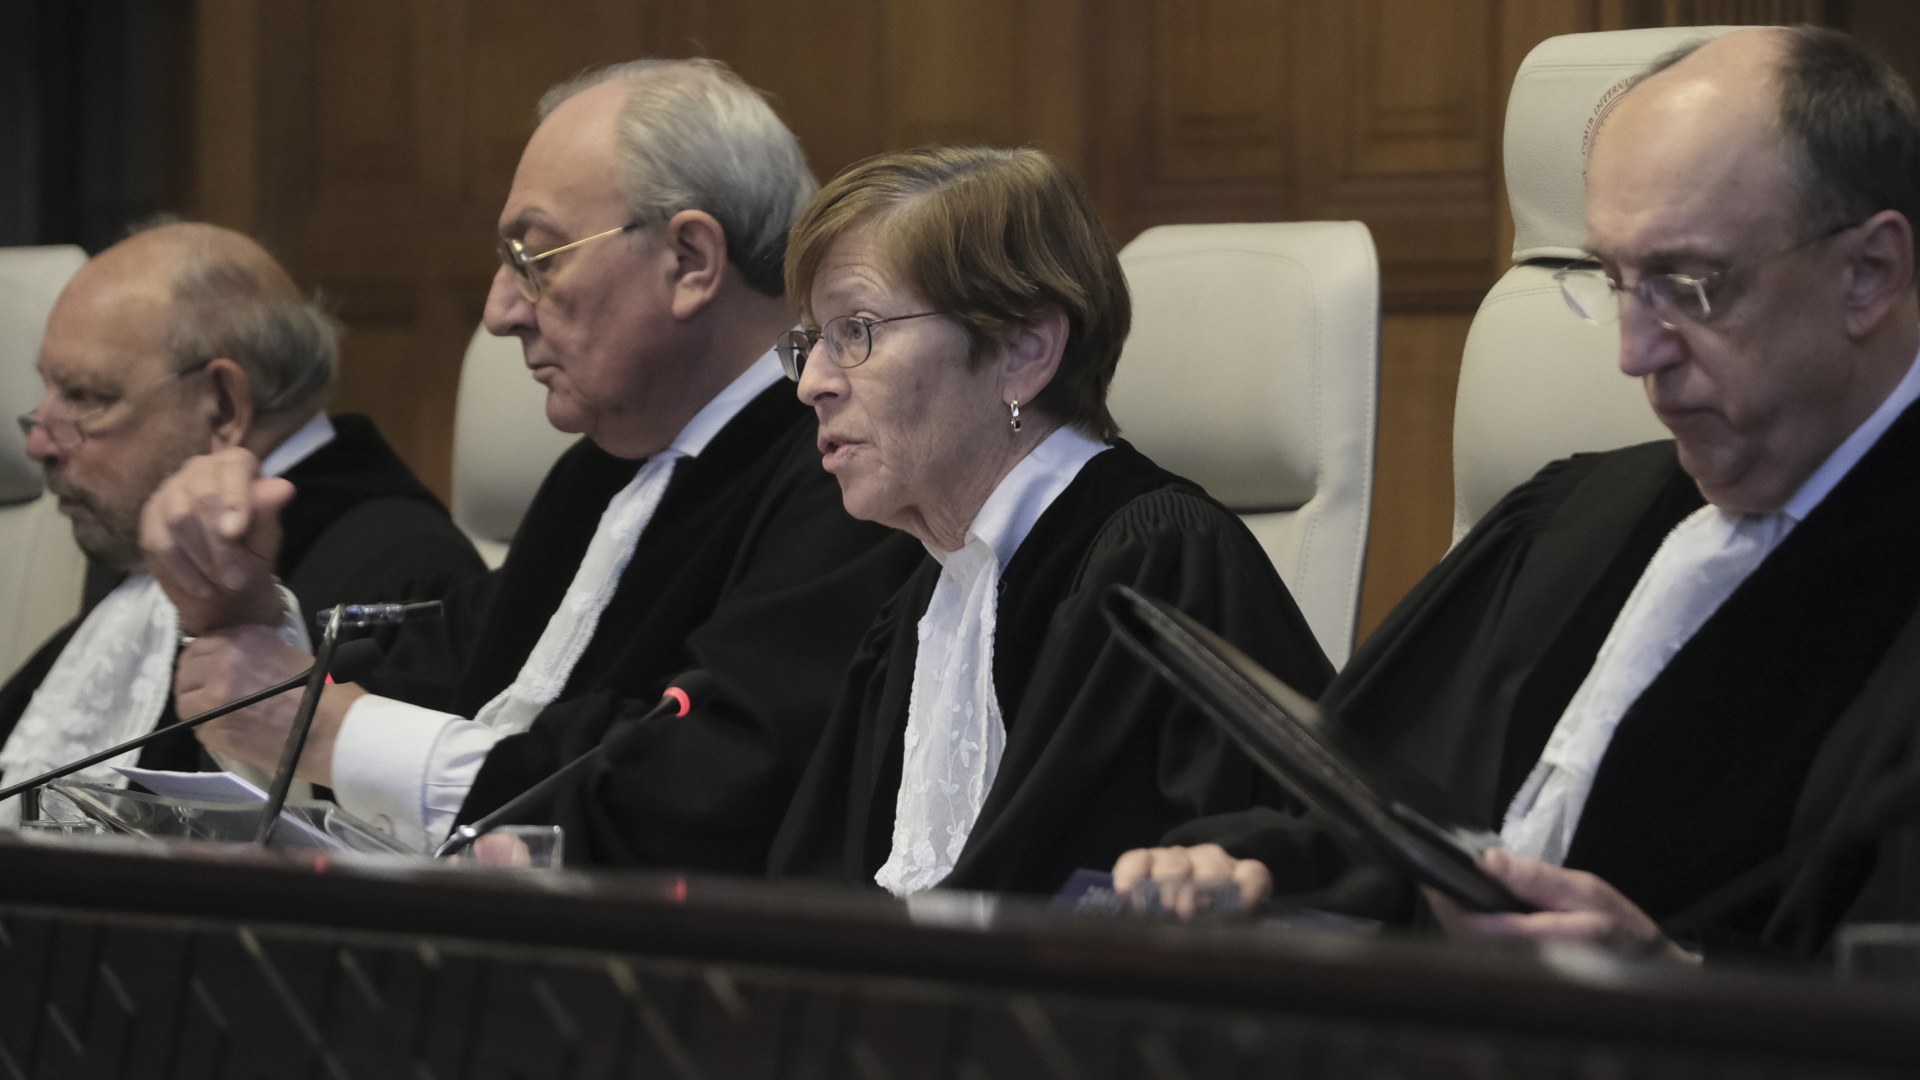 Joan Donoghue, Vorsitzende Richterin des internationalen Gerichtshofs, spricht während einer Sitzung des Internationalen Gerichtshofs.